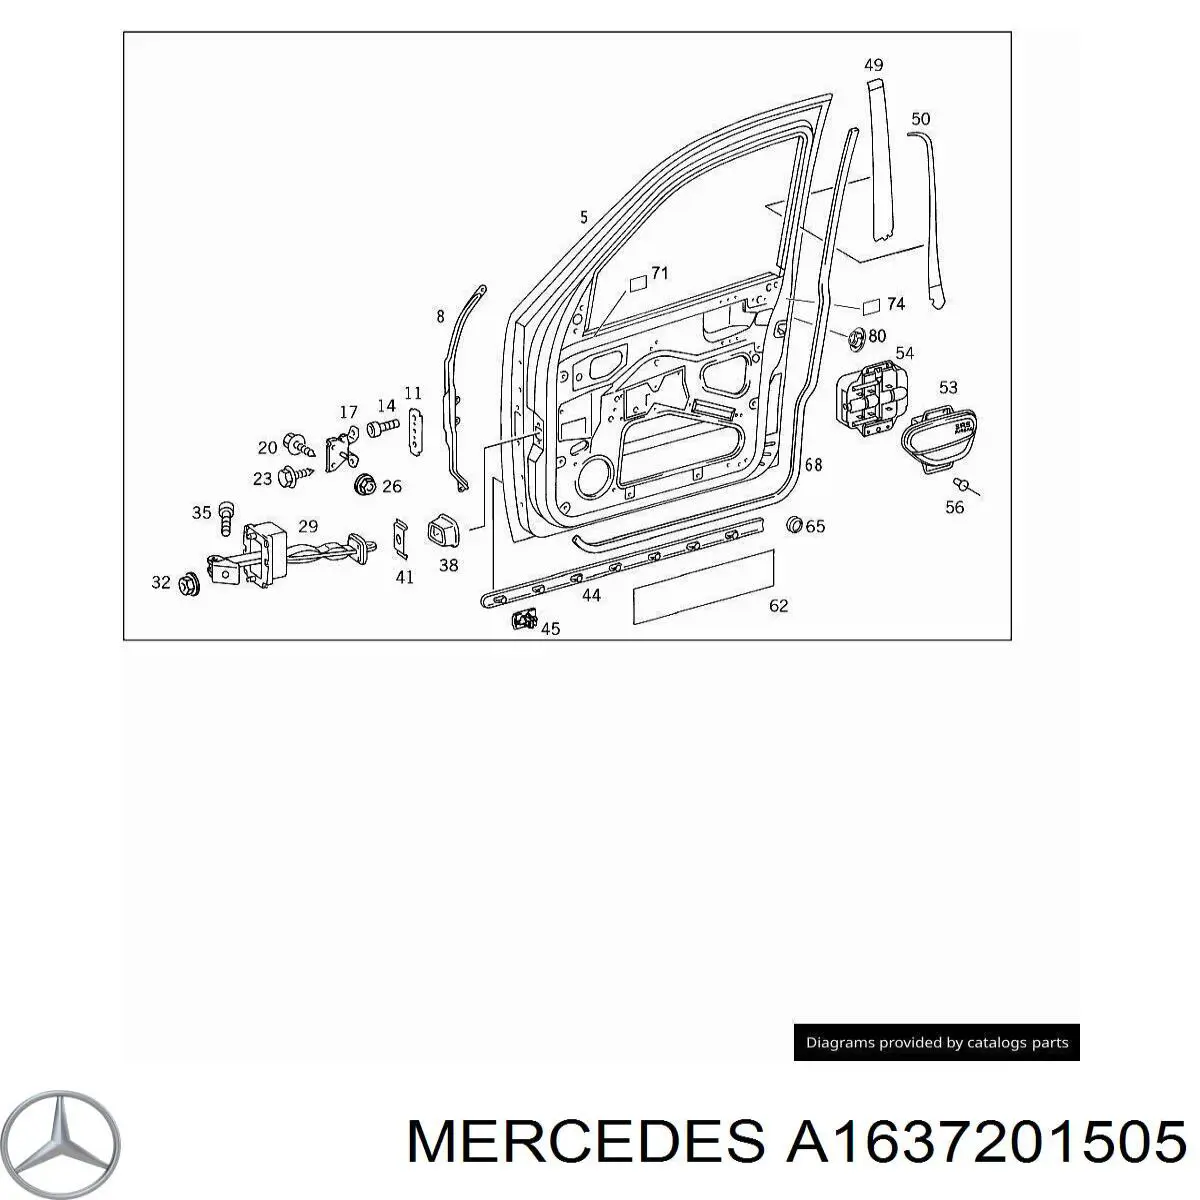 Puerta de coche, delantera, izquierda para Mercedes ML/GLE (W163)